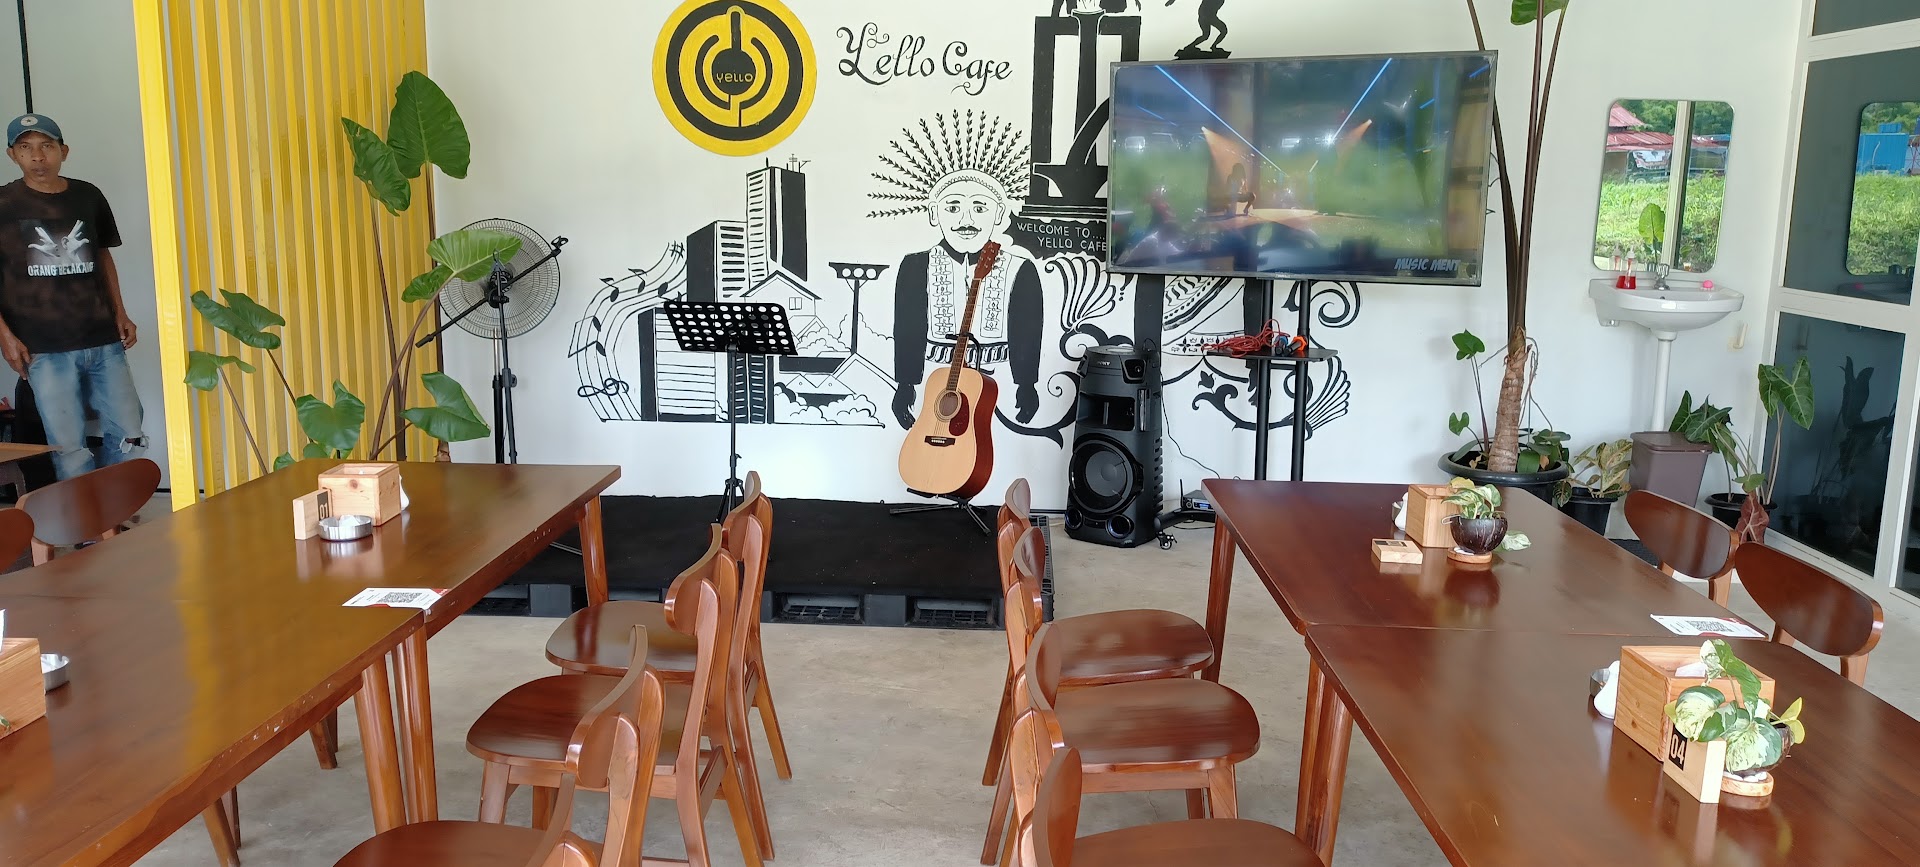 Yello Cafe Jakarta Photo